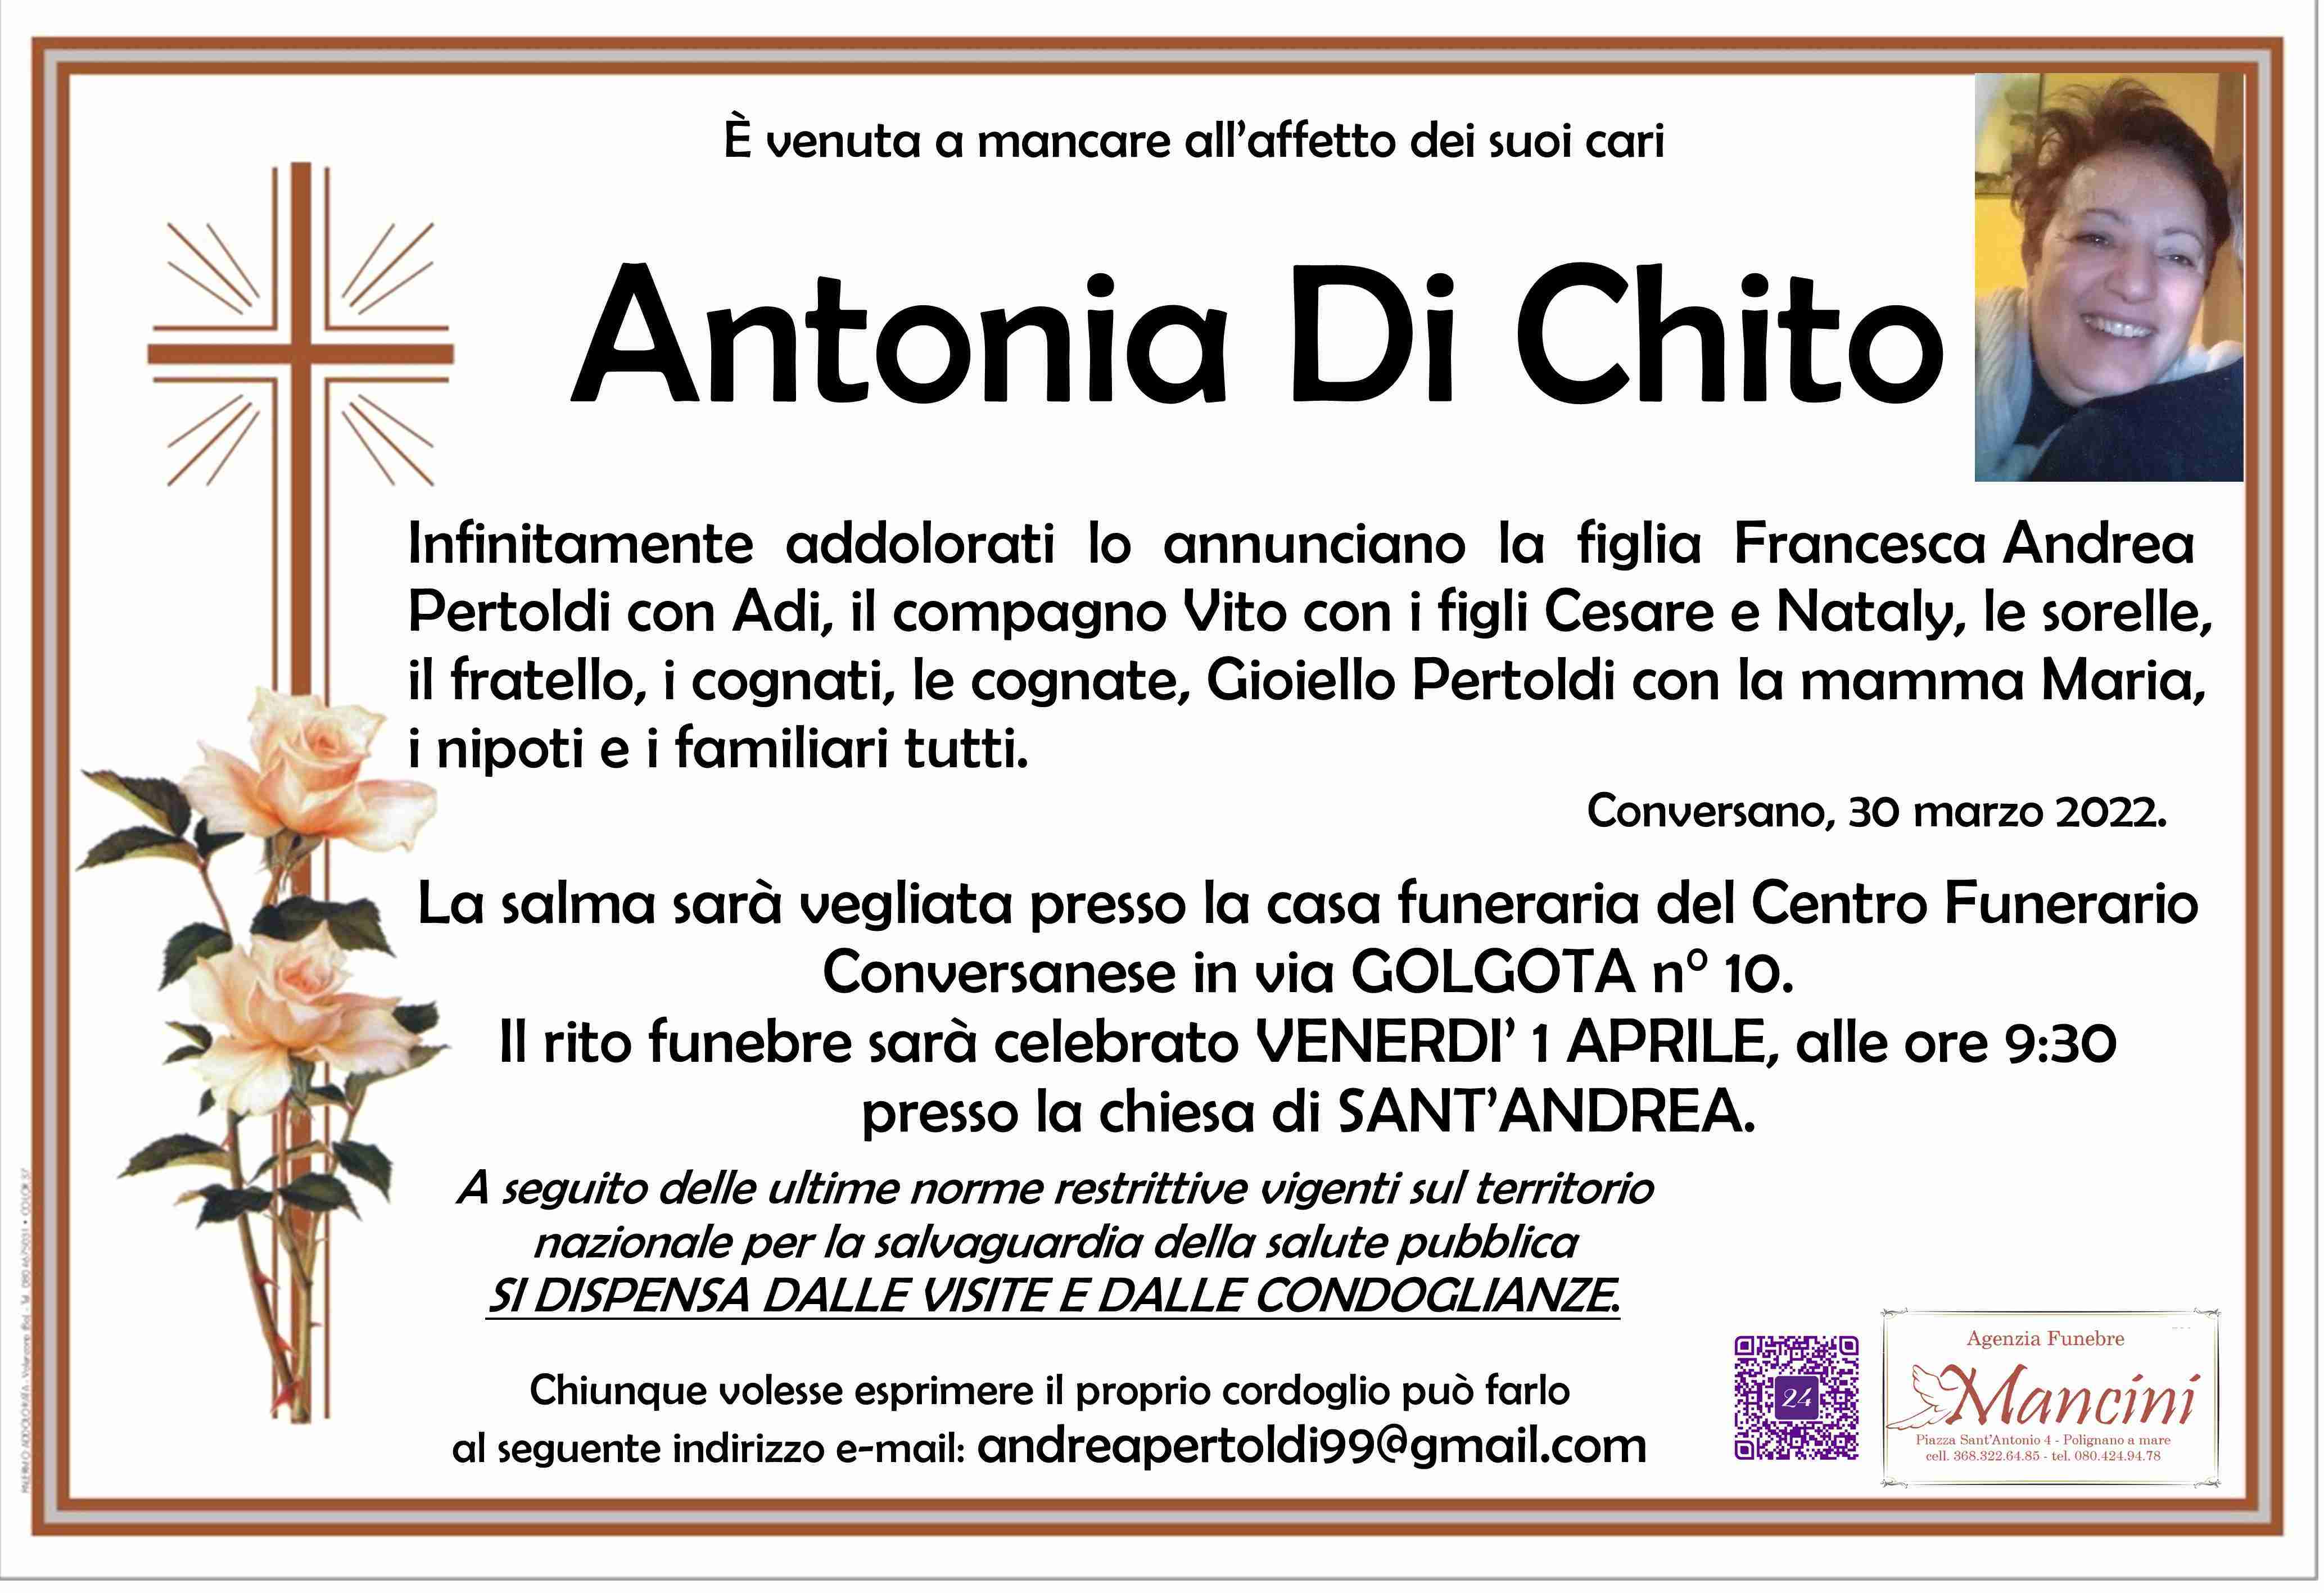 Antonia Di Chito